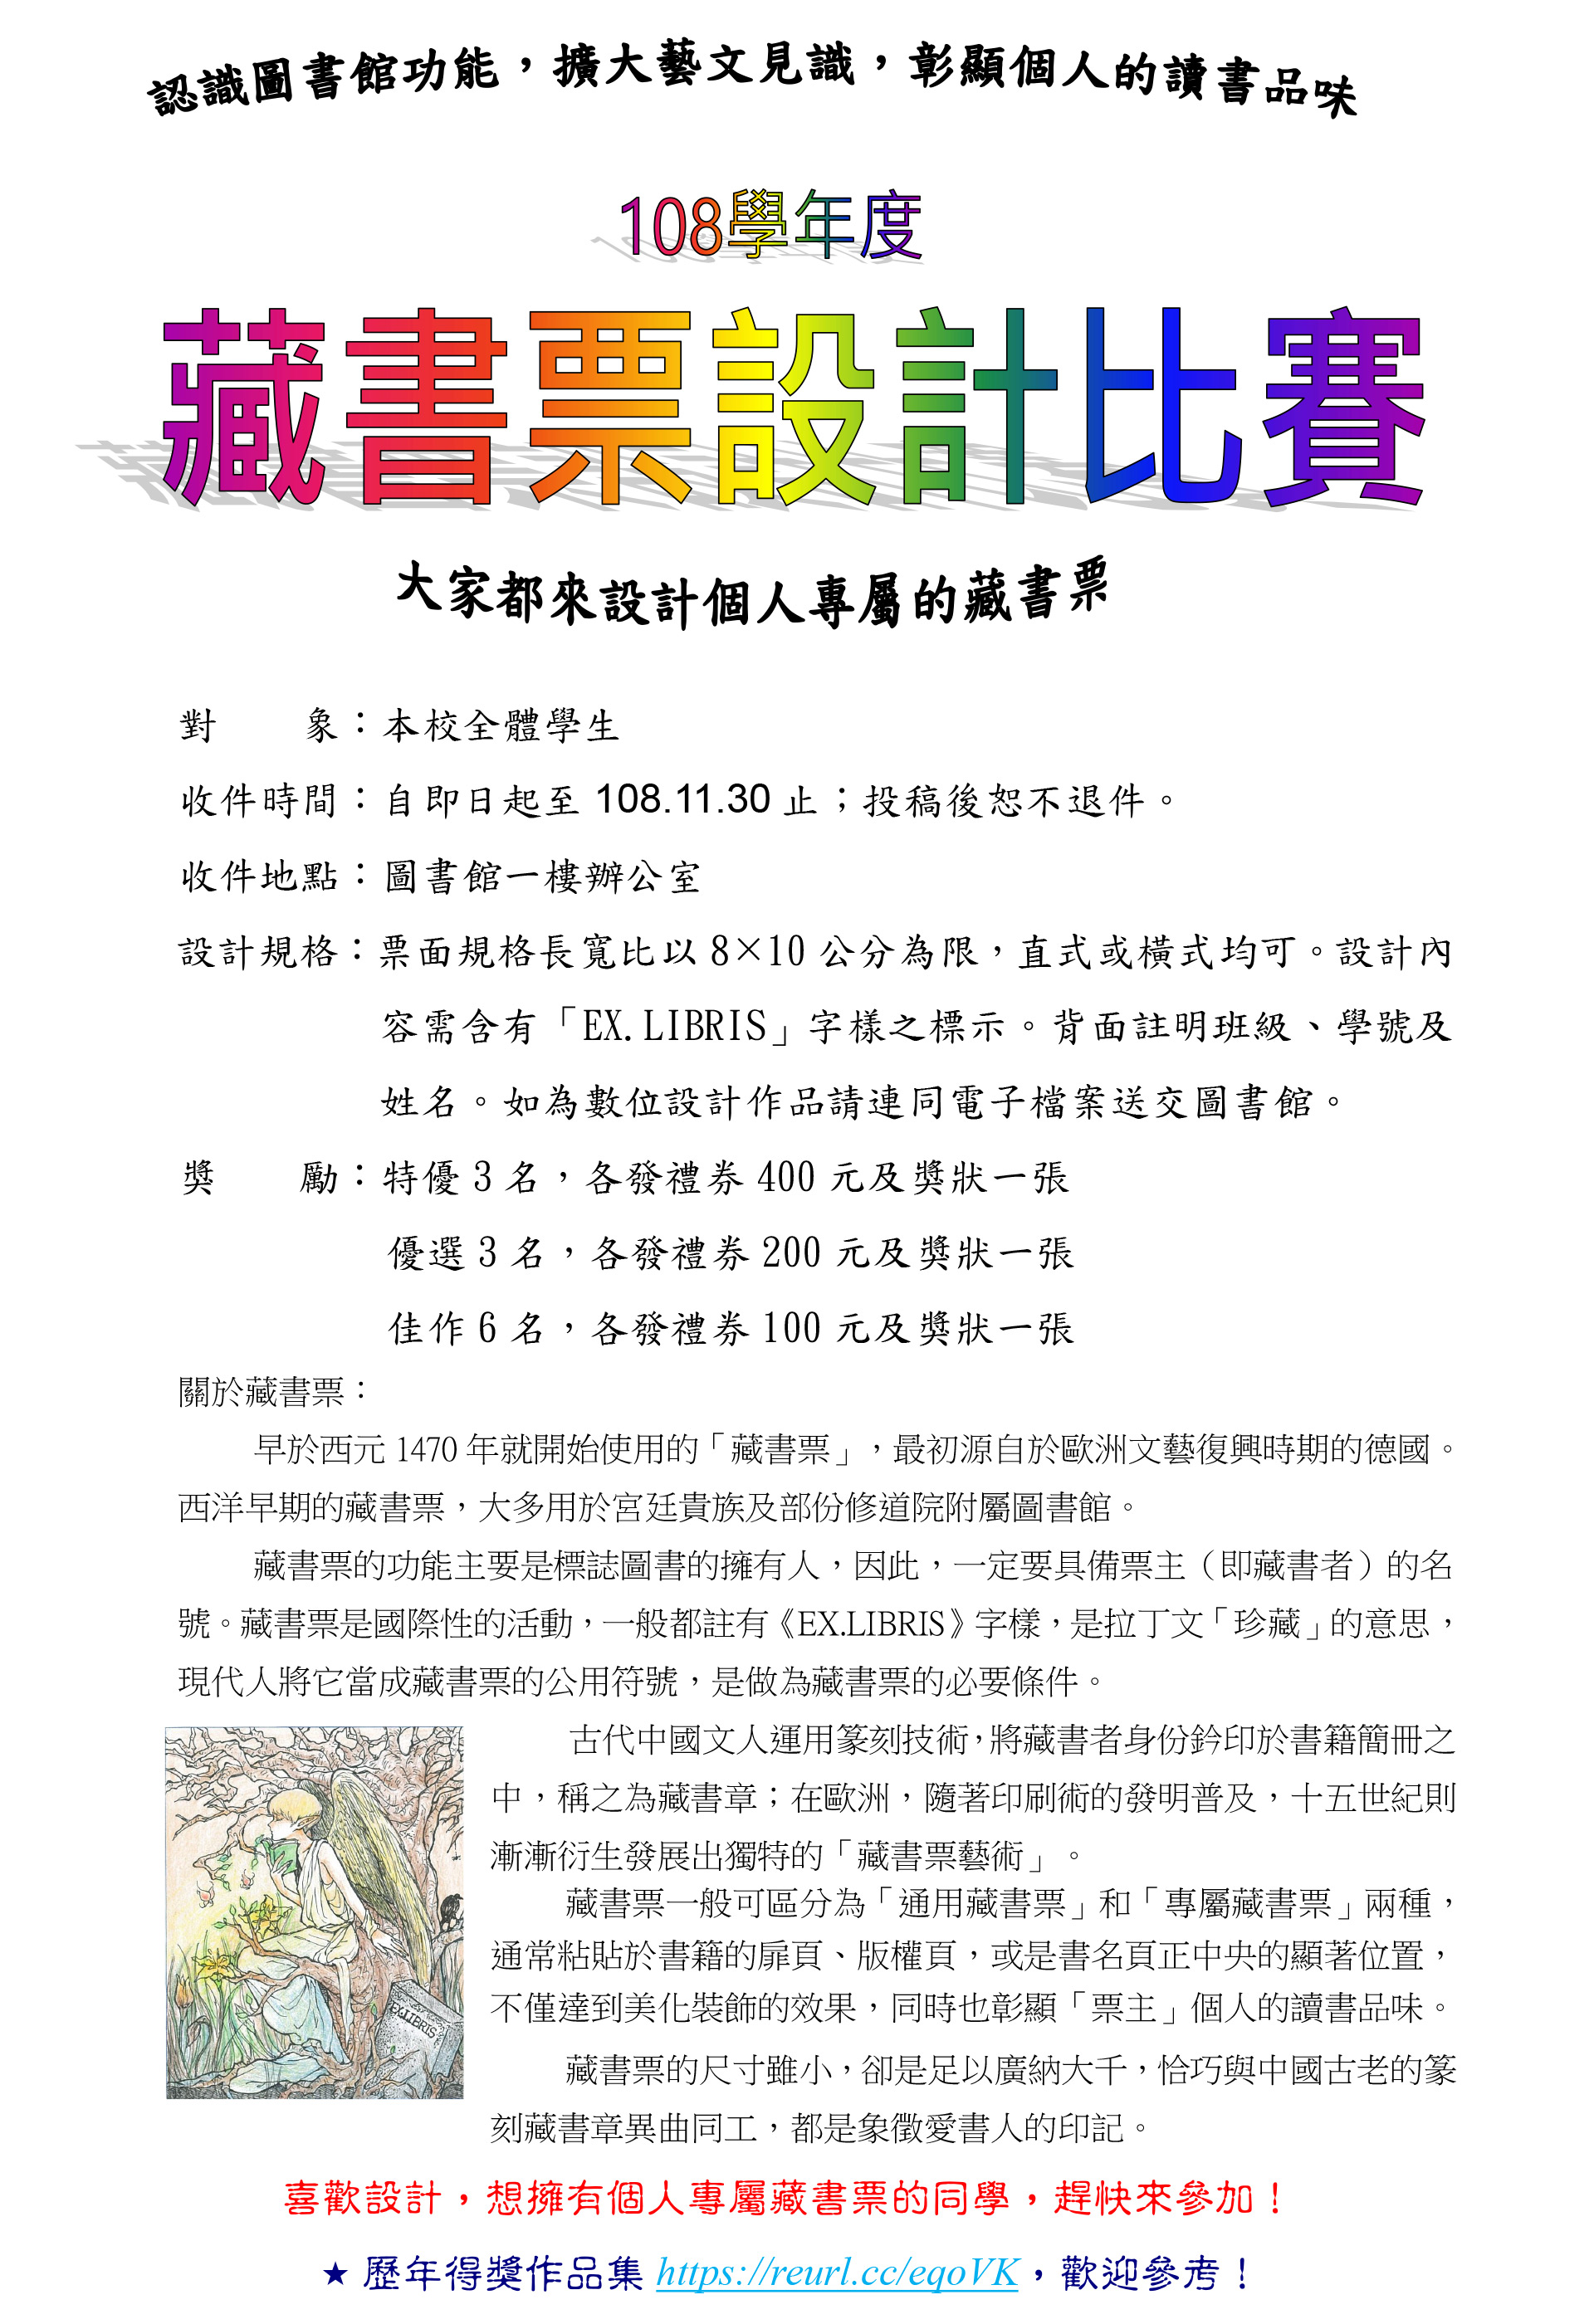 國立彰化女子高級中學。108年藏書票設計比賽 海報